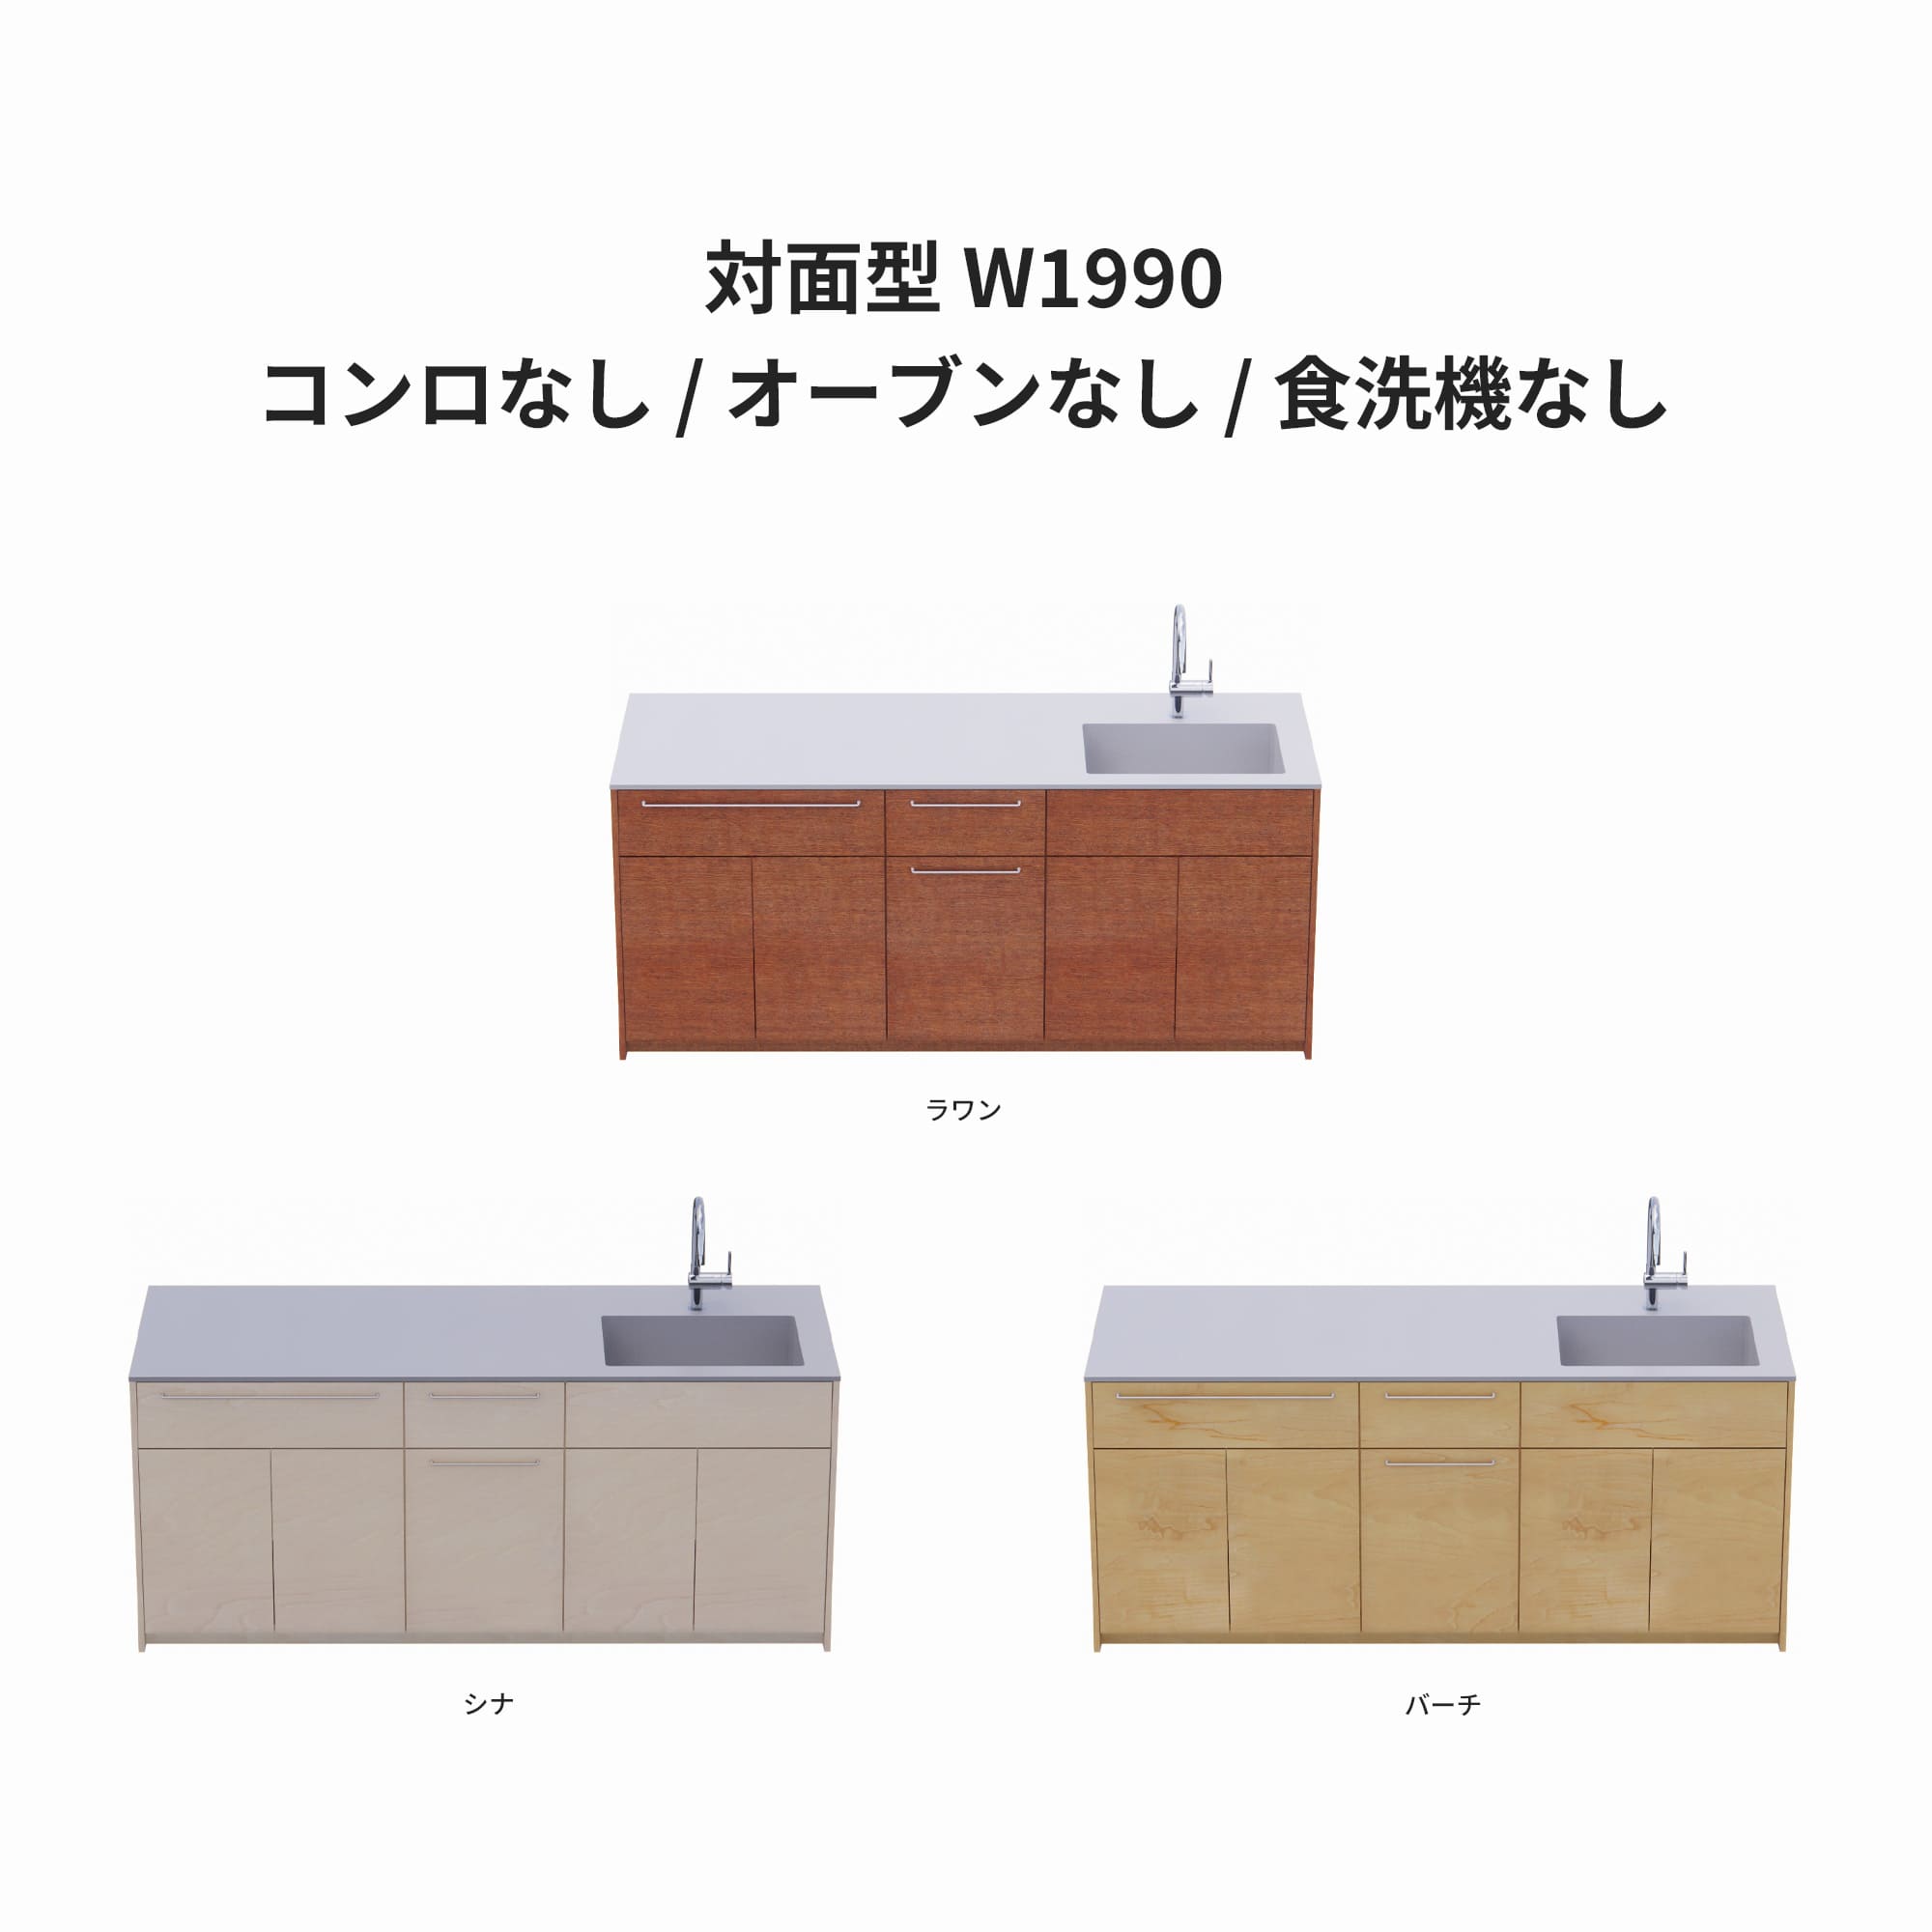 木製システムキッチン 対面型 W1990・コンロなし / オーブンなし / 食洗機なし KB-KC022-32-G183 ラワン・シナ・バーチが選択できます